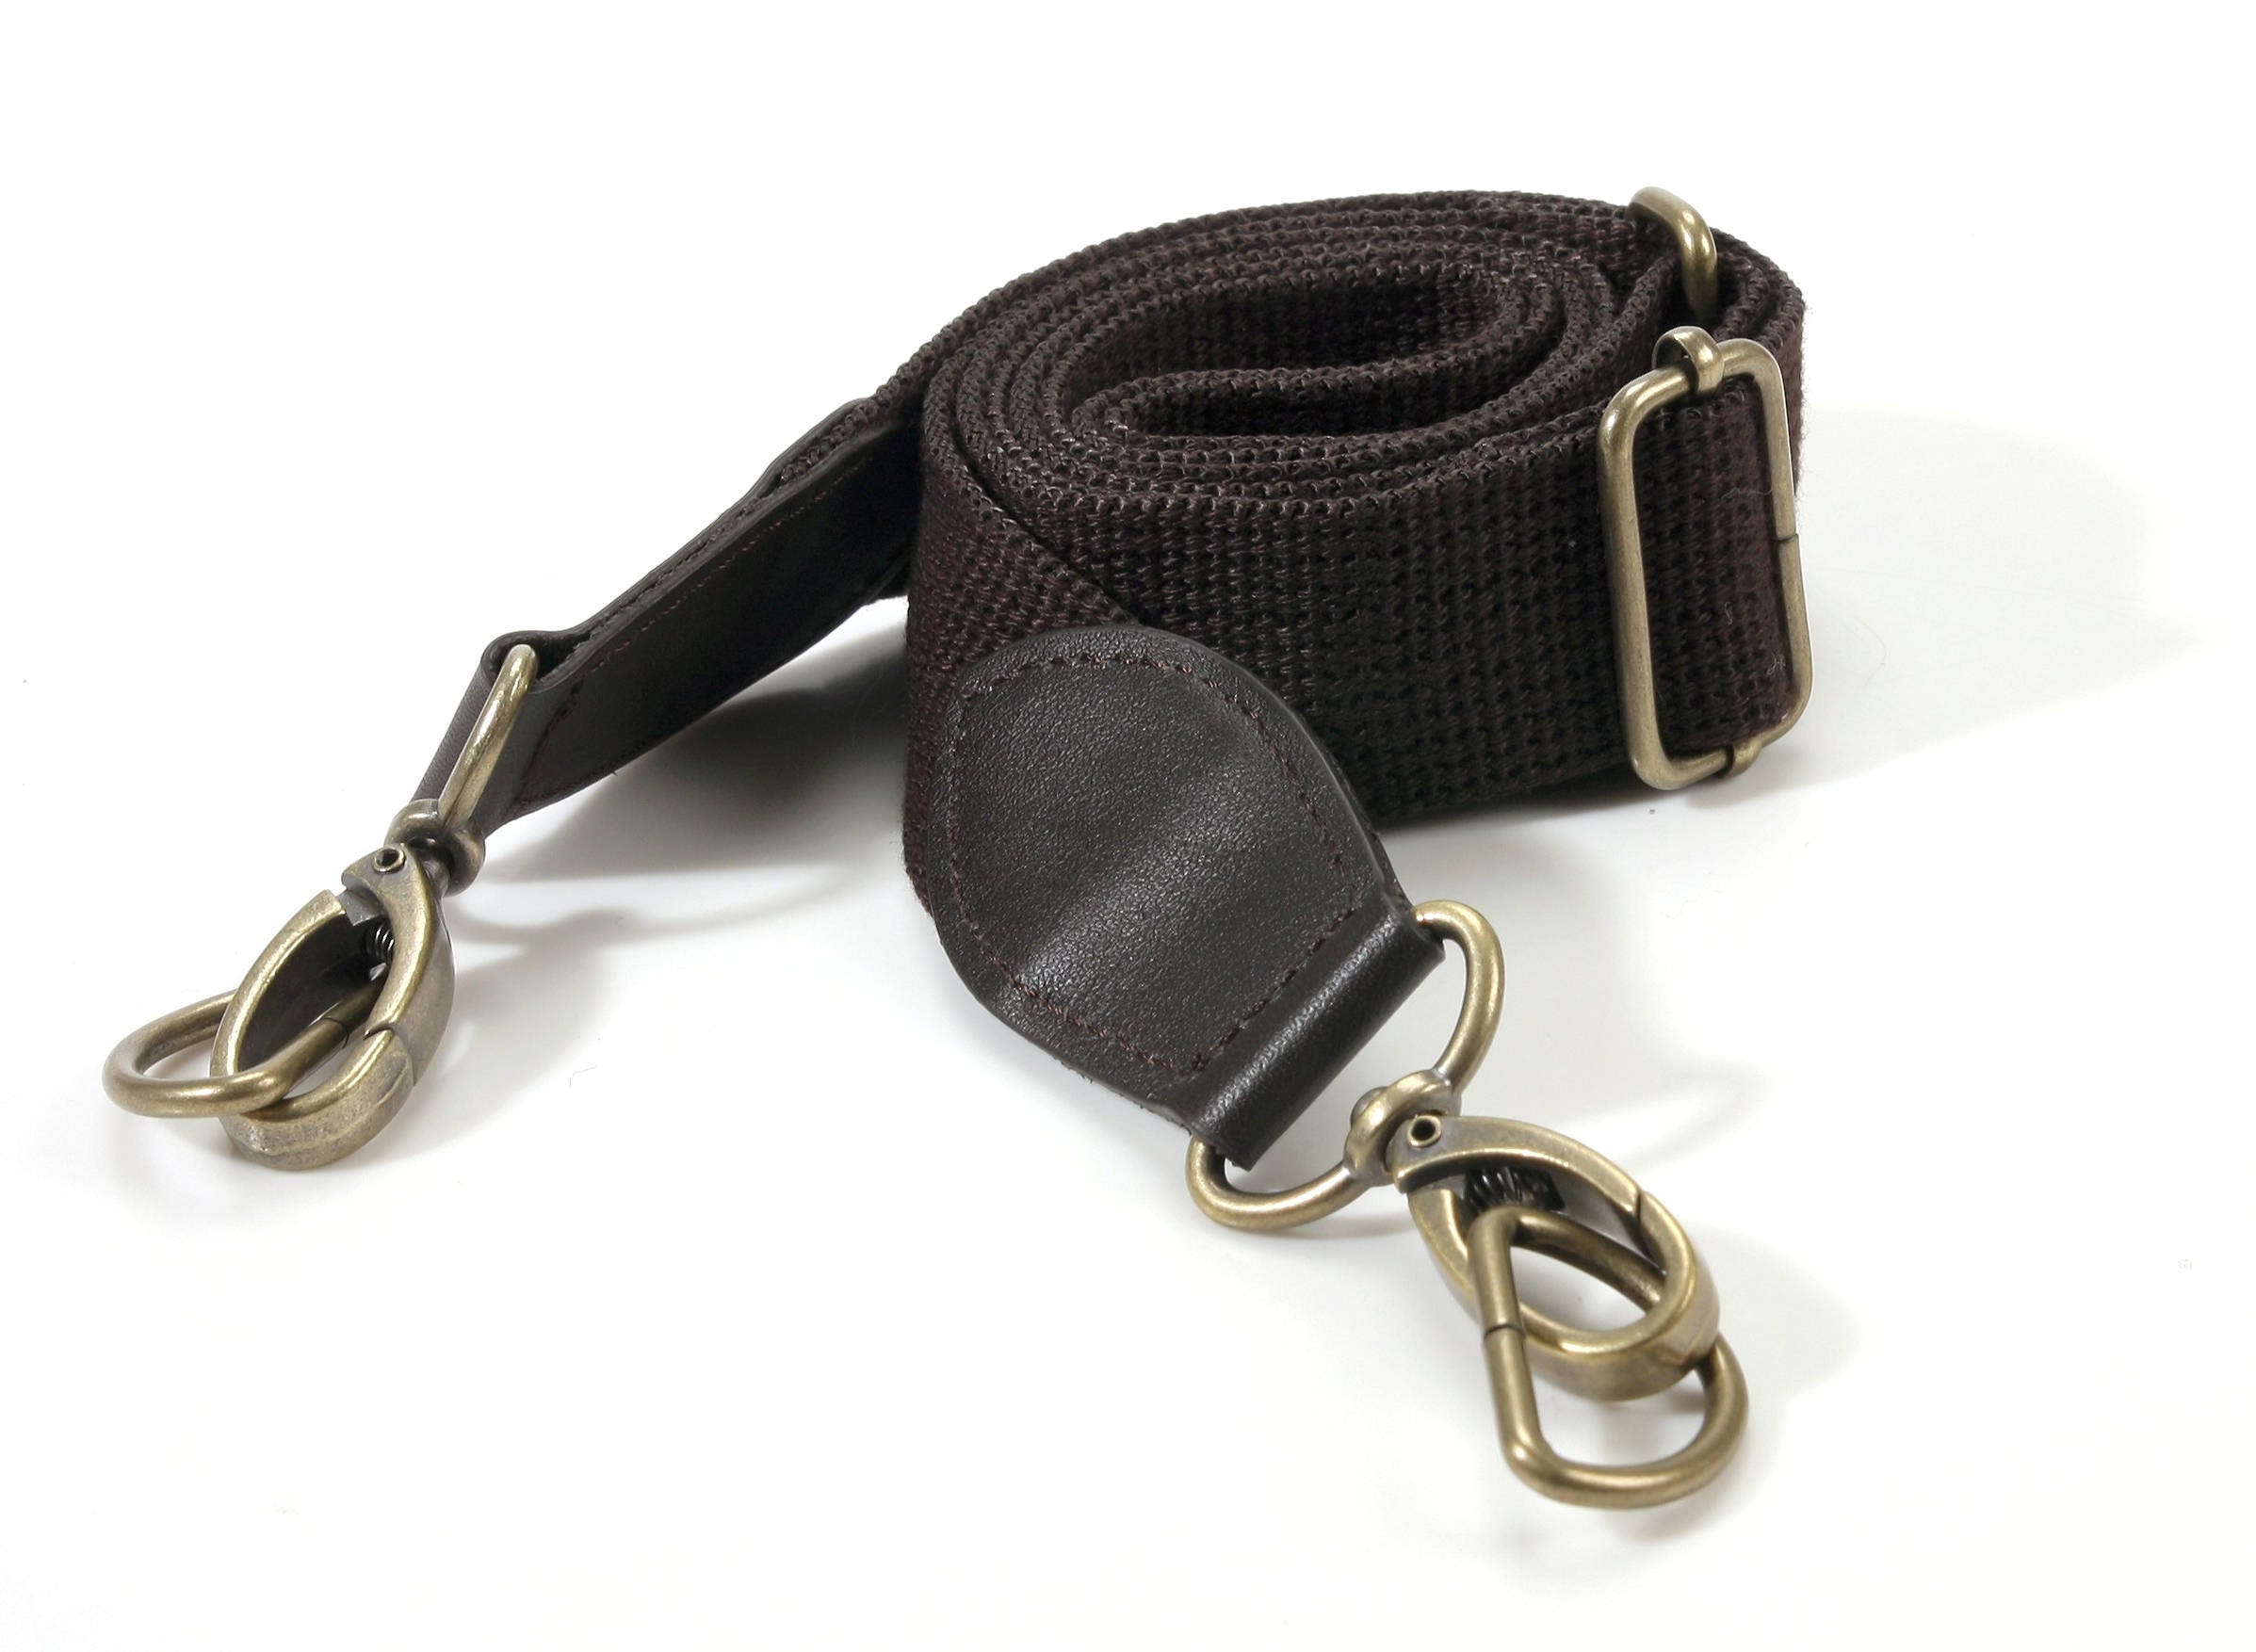 23.6 byhands Genuine Leather Purse Handles, Shoulder Bag Strap (22-6001)